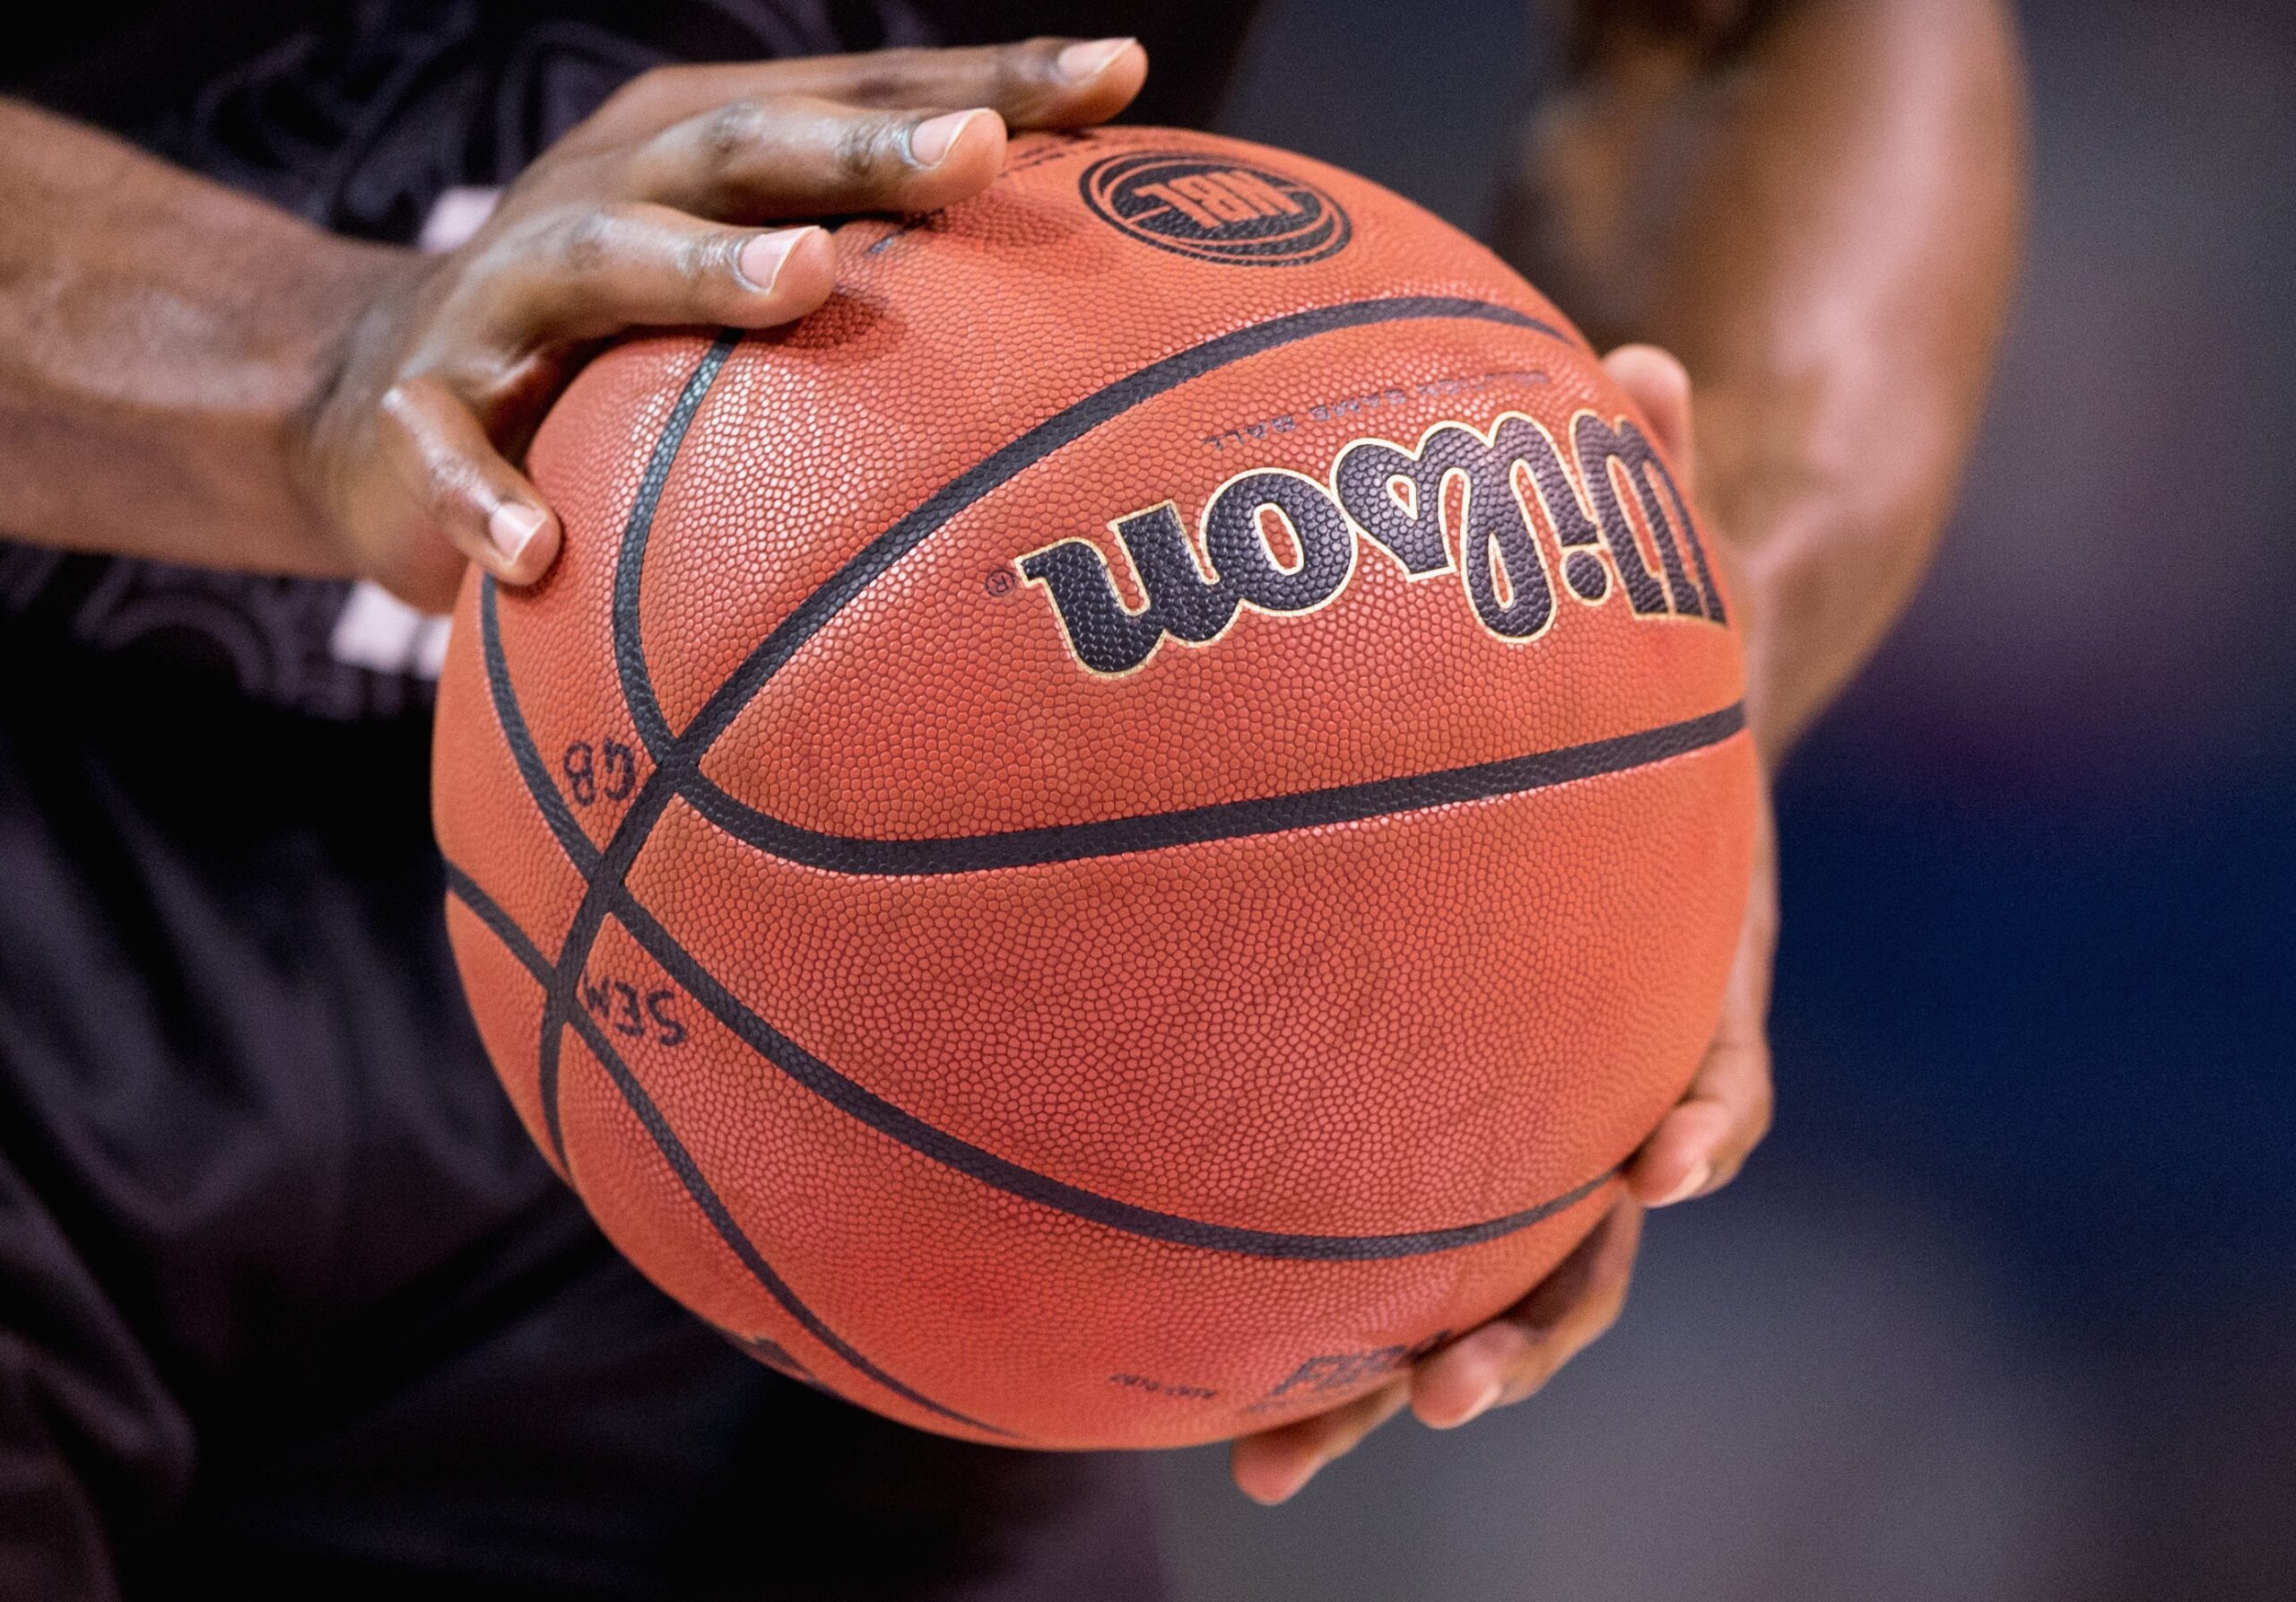 Quả bóng rổ được làm từ cao su hoặc chất liệu có khả năng chịu áp lực cao